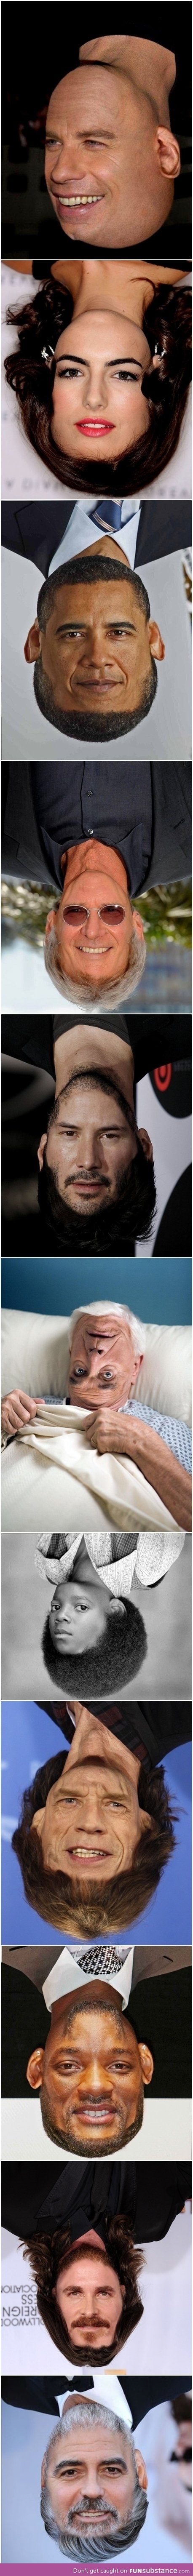 Celebrities upside down